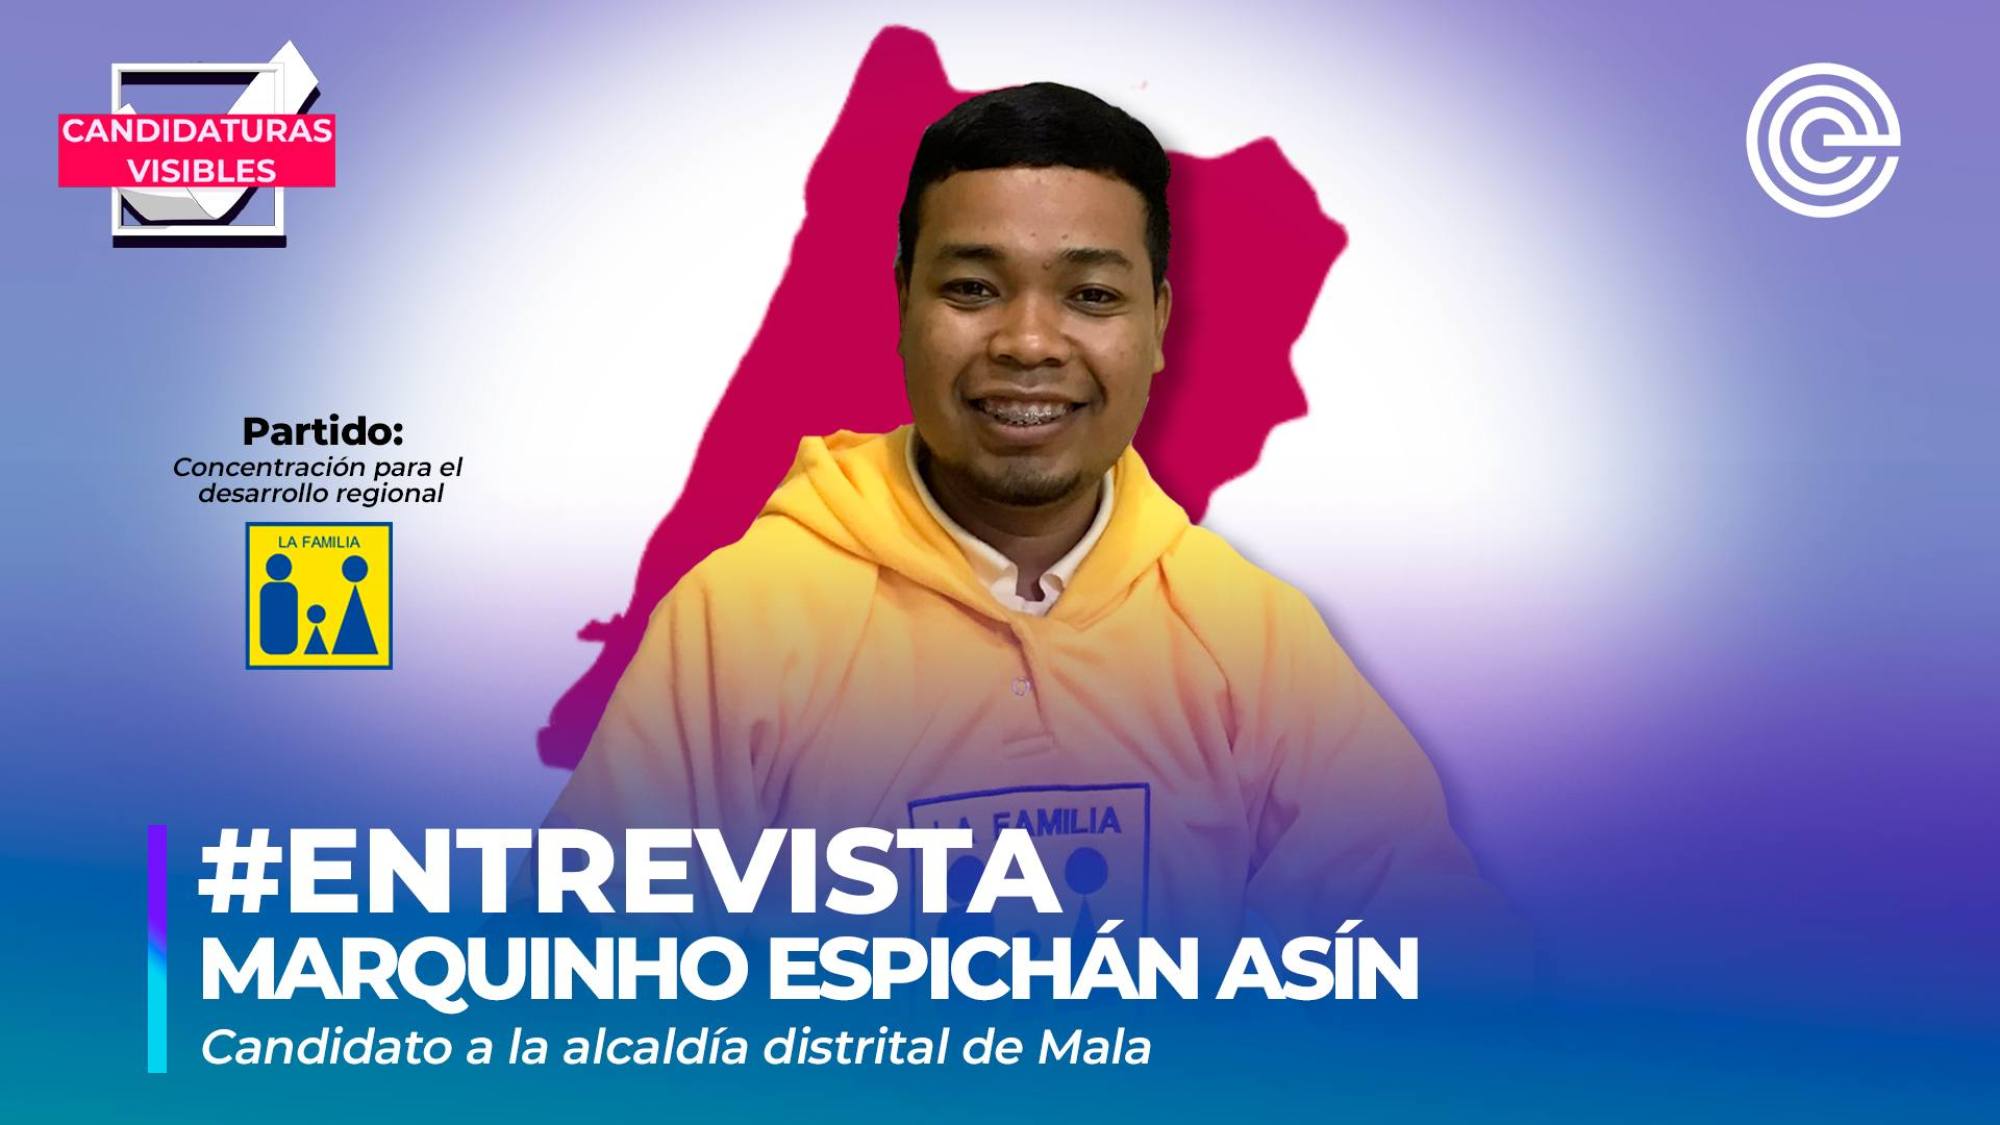 Candidaturas Visibles | Marquinho Espichán, candidato a la alcaldía distrital de Mala por Concertación para el Desarrollo Regional, Epicentro TV